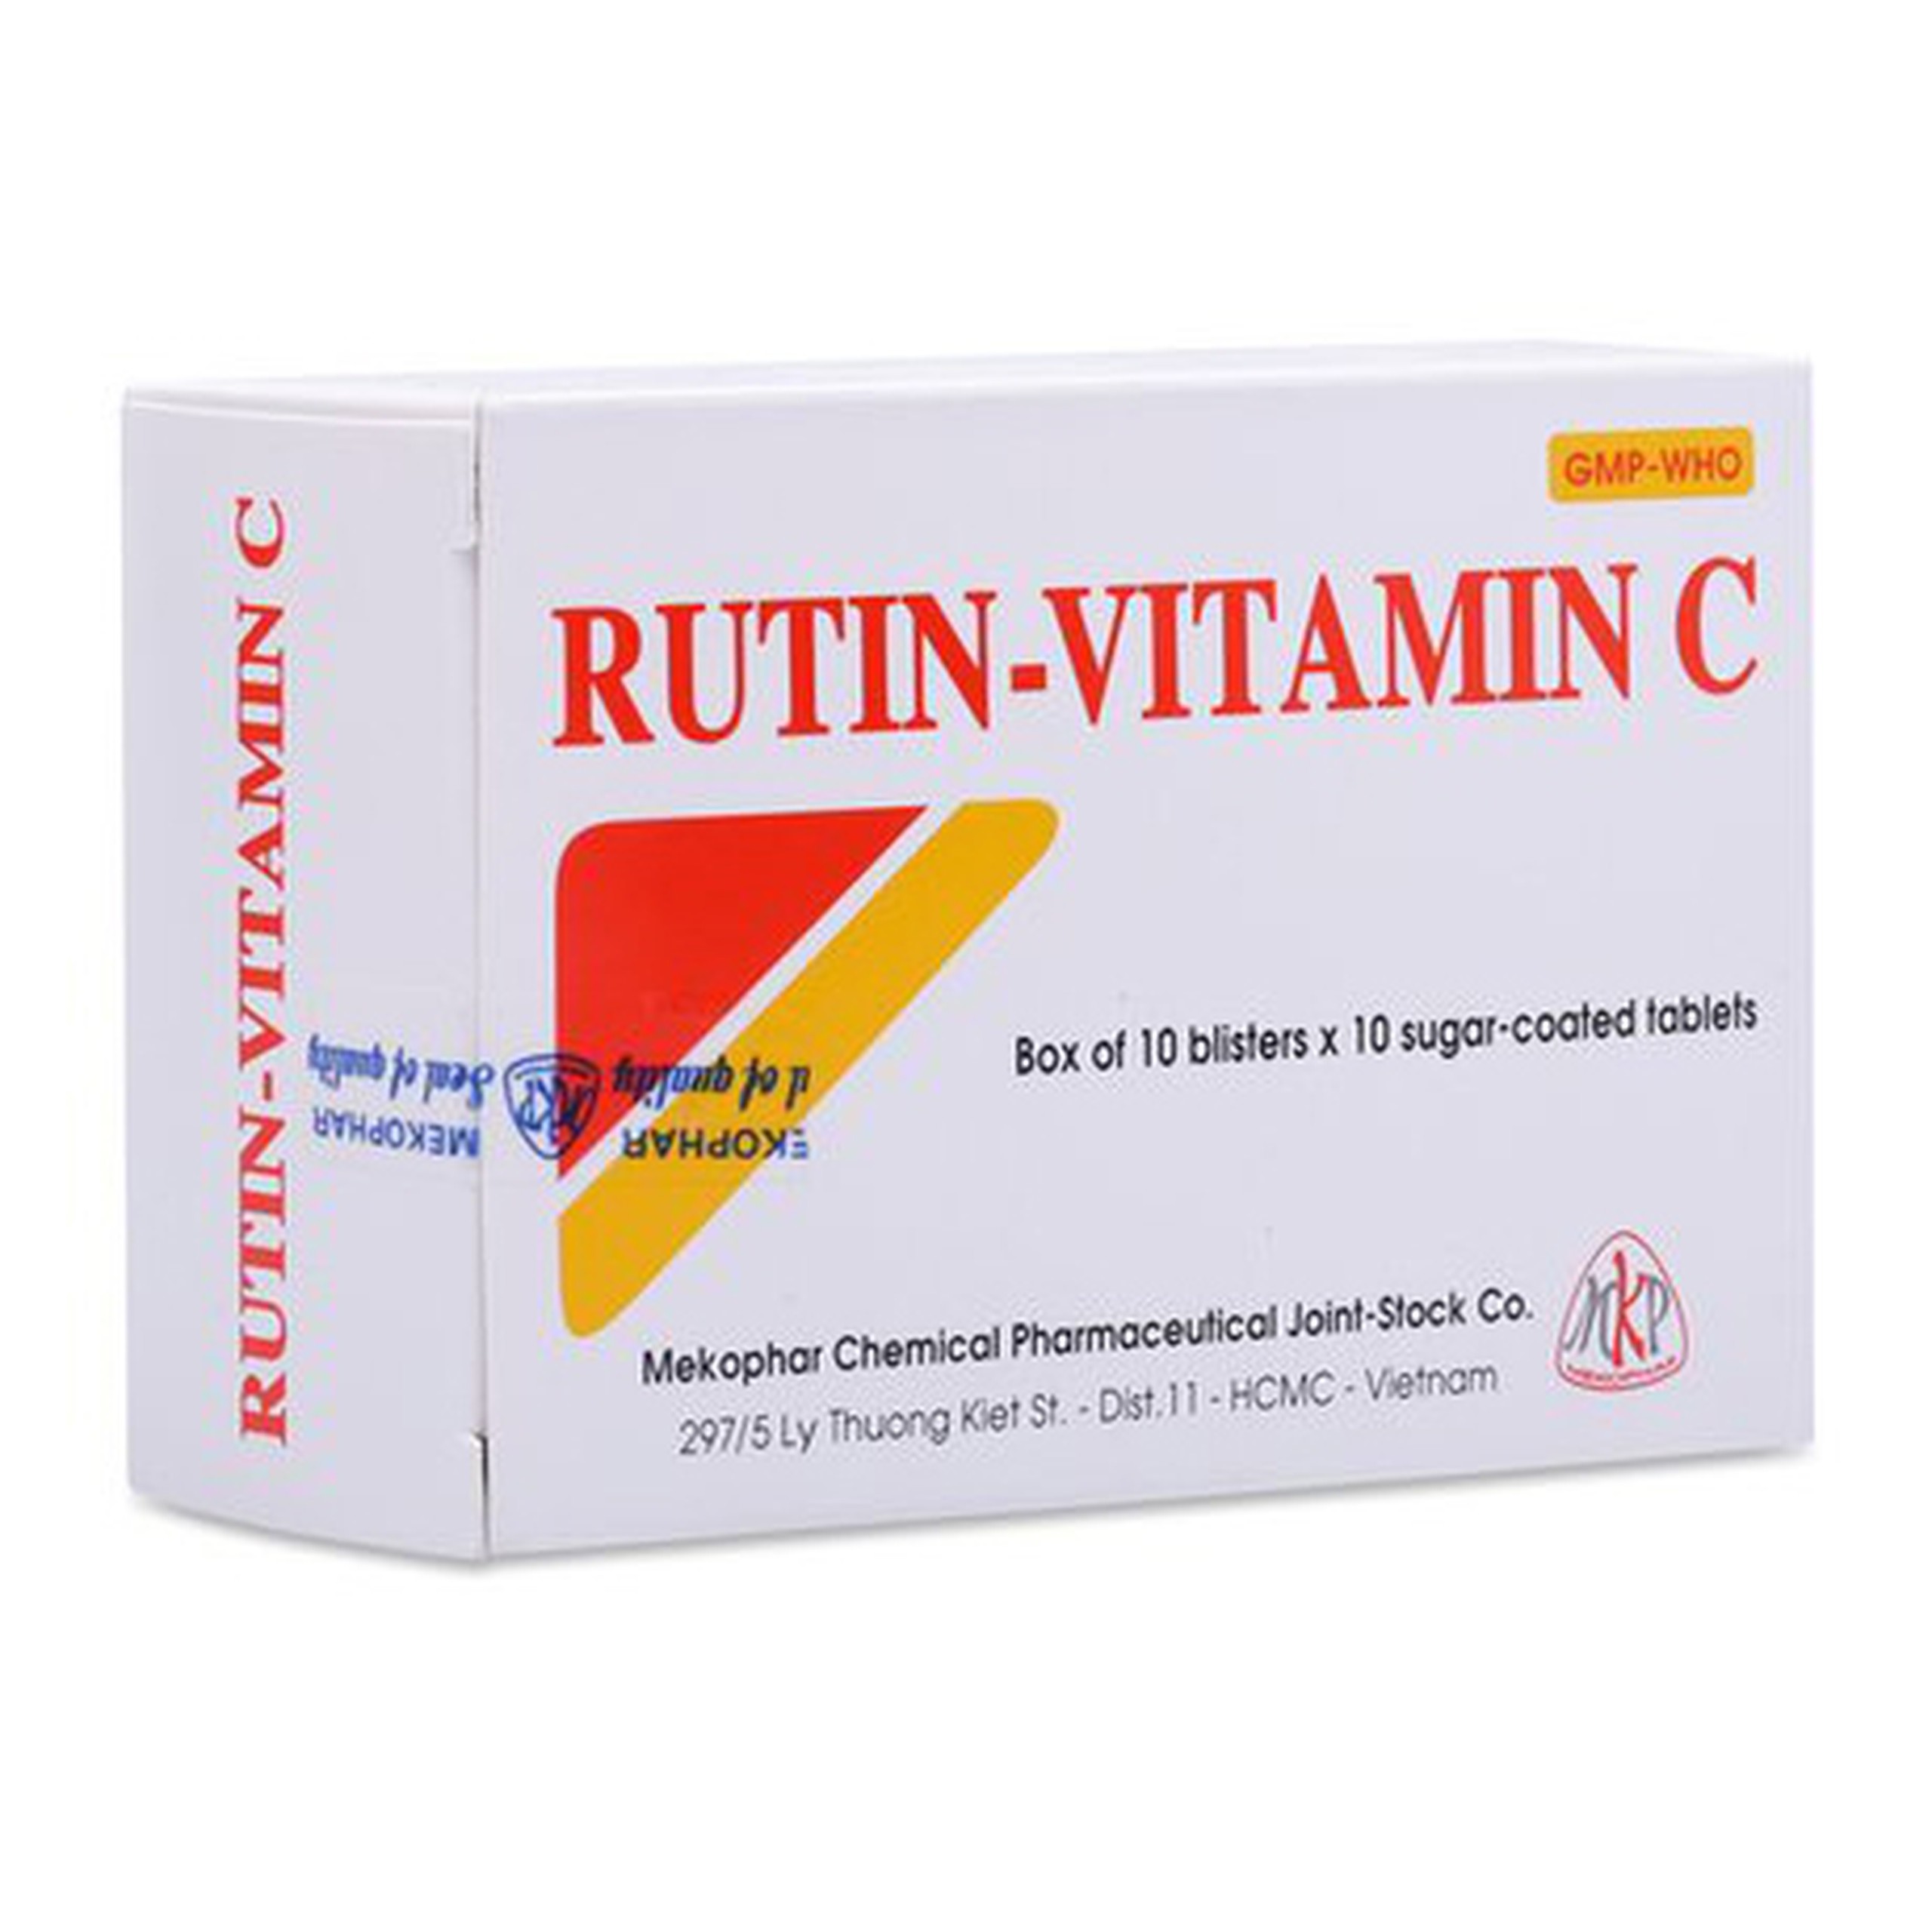 Thuốc Rutin-Vitamin C Thành Nam điều trị viêm, giãn tĩnh mạch (10 vỉ x 10 viên)